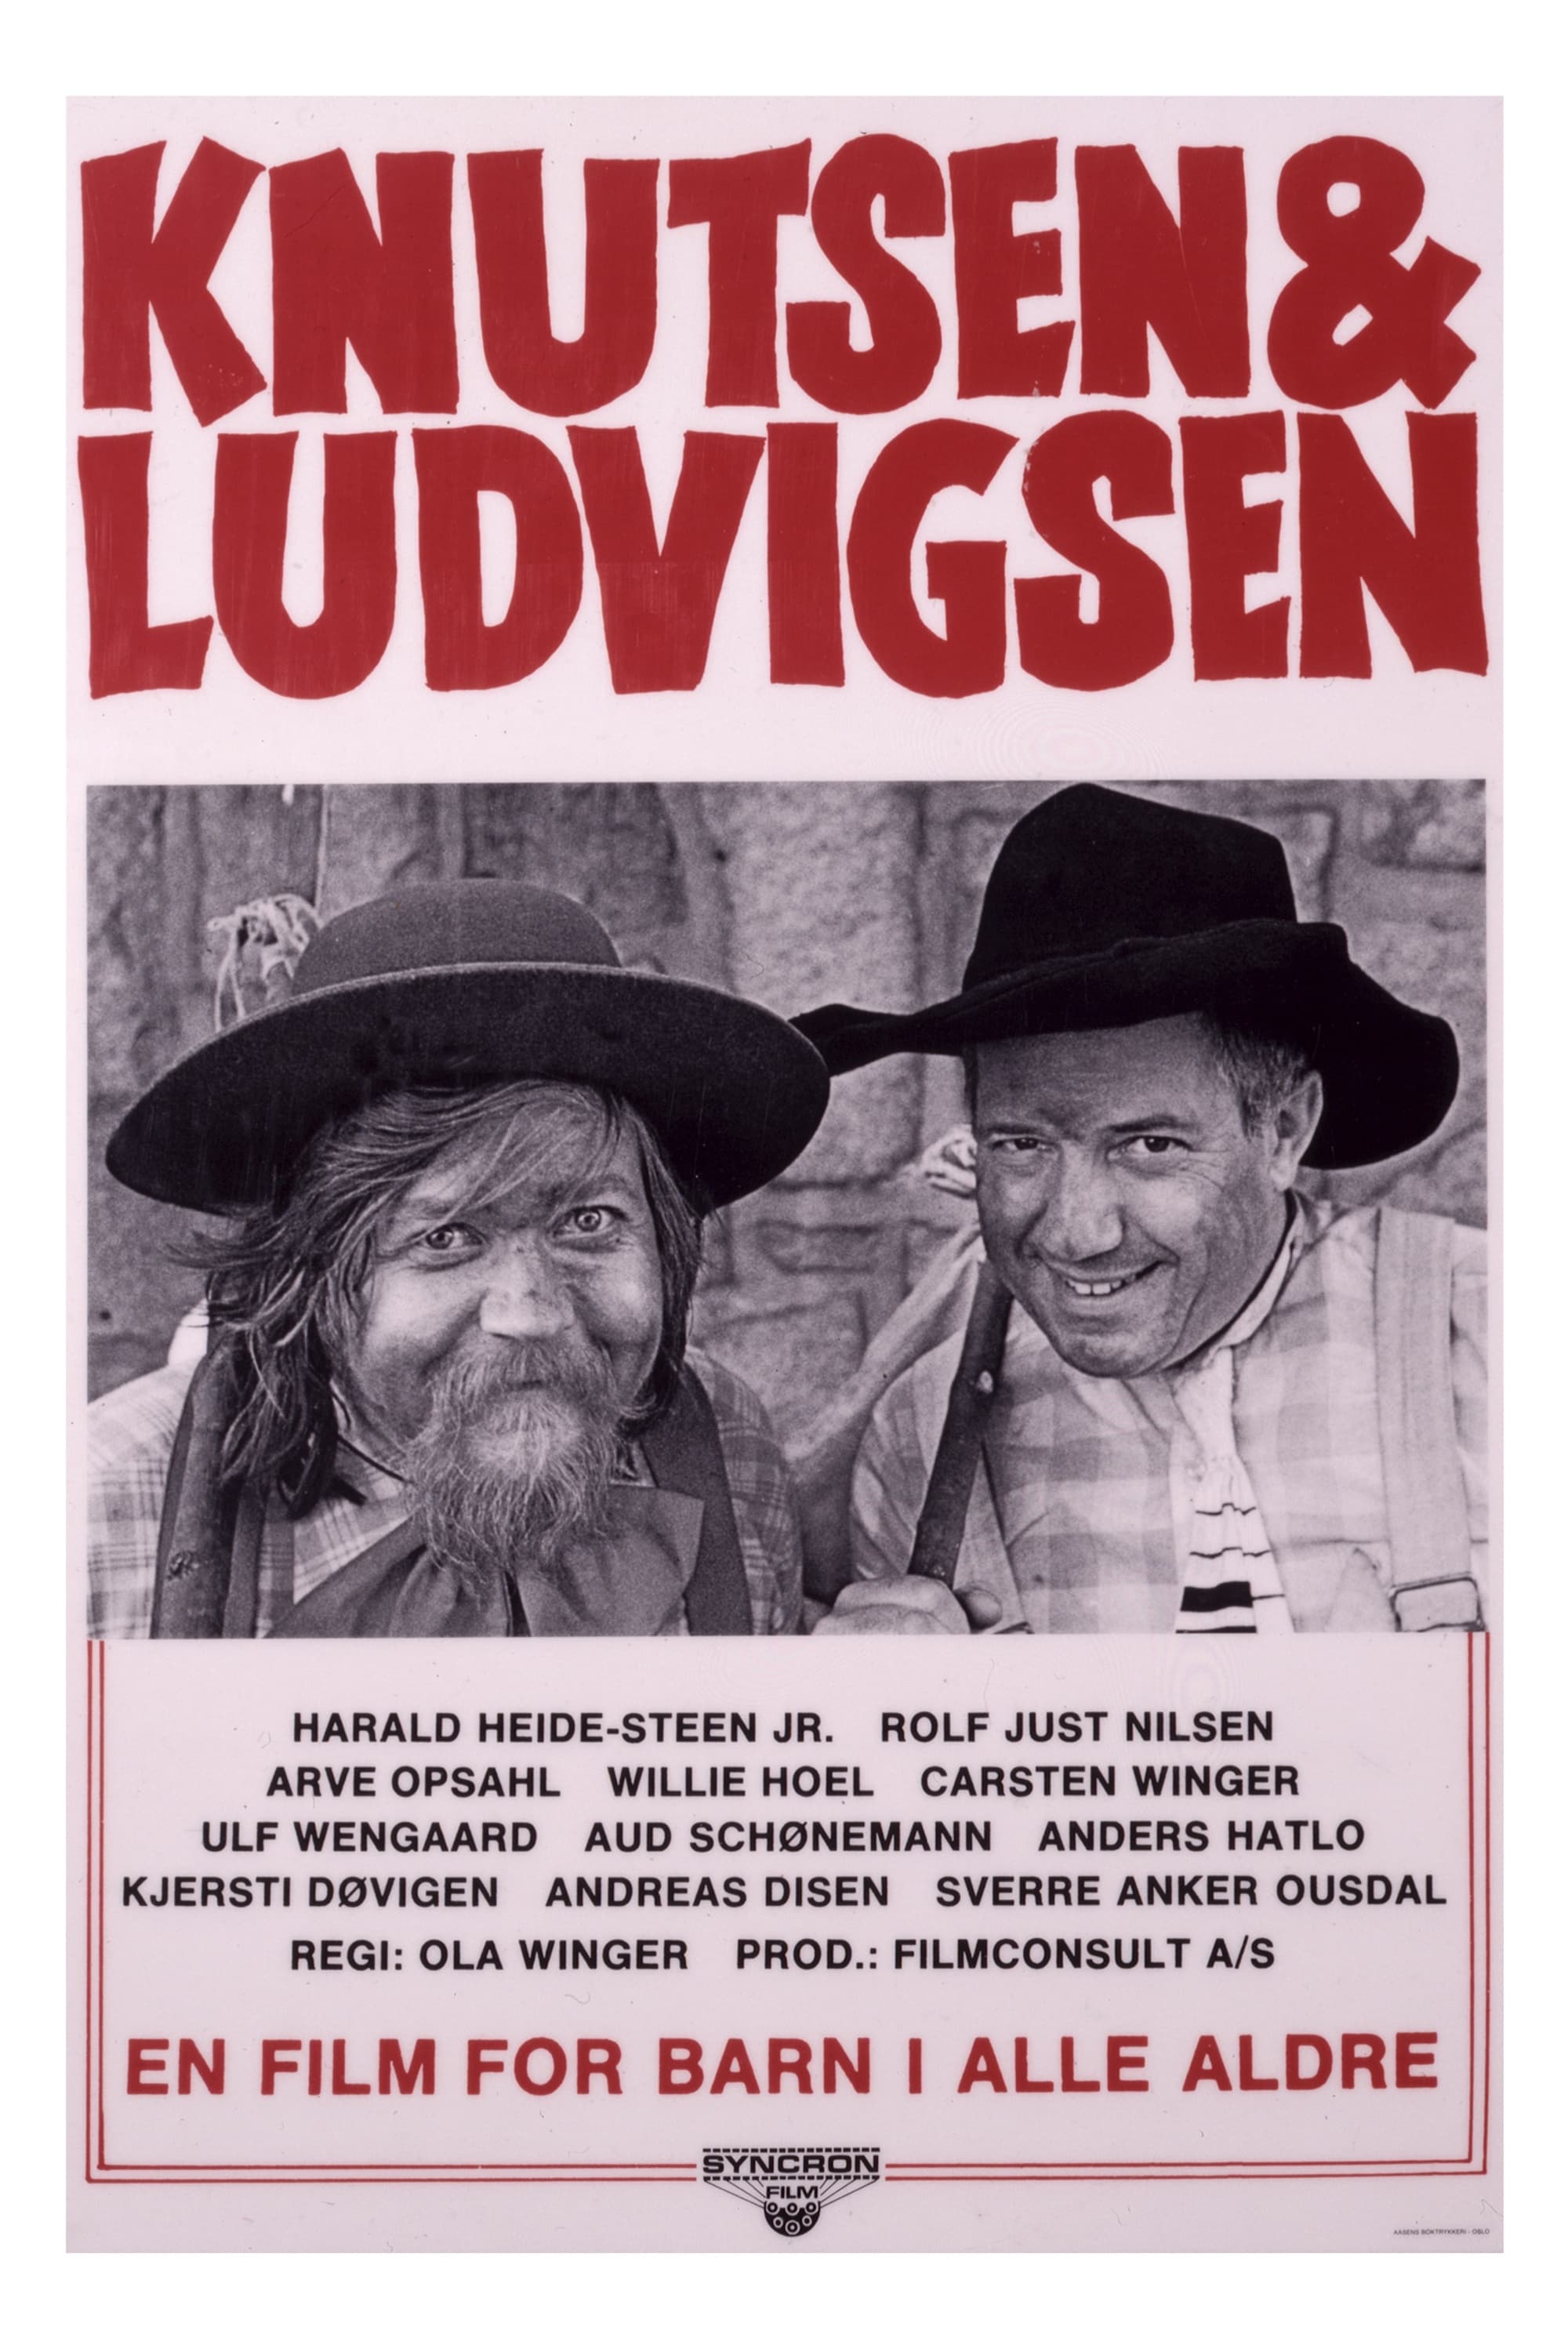 Knutsen & Ludvigsen